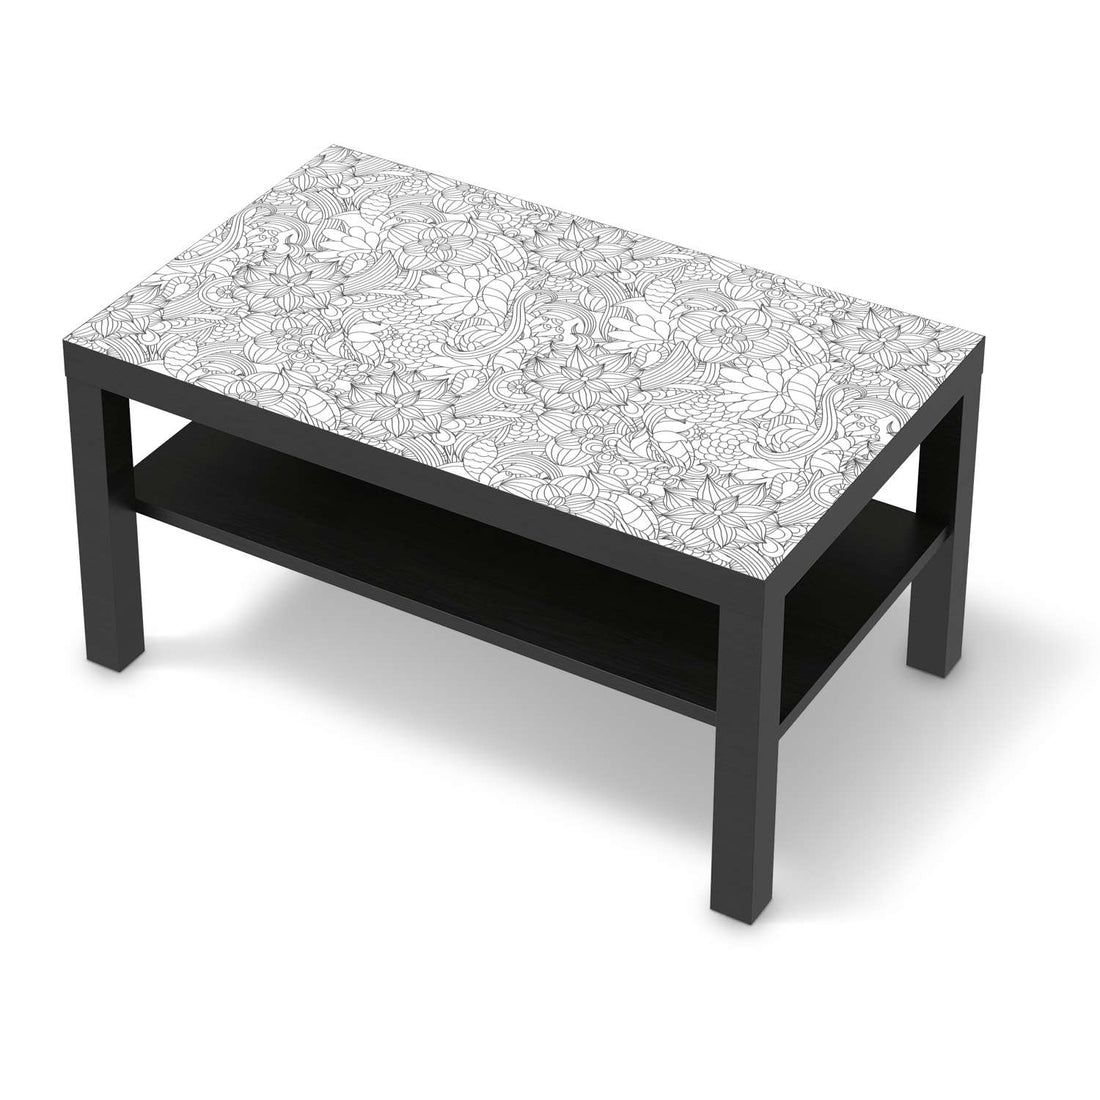 Möbelfolie Flower Lines 2 - IKEA Lack Tisch 90x55 cm - schwarz